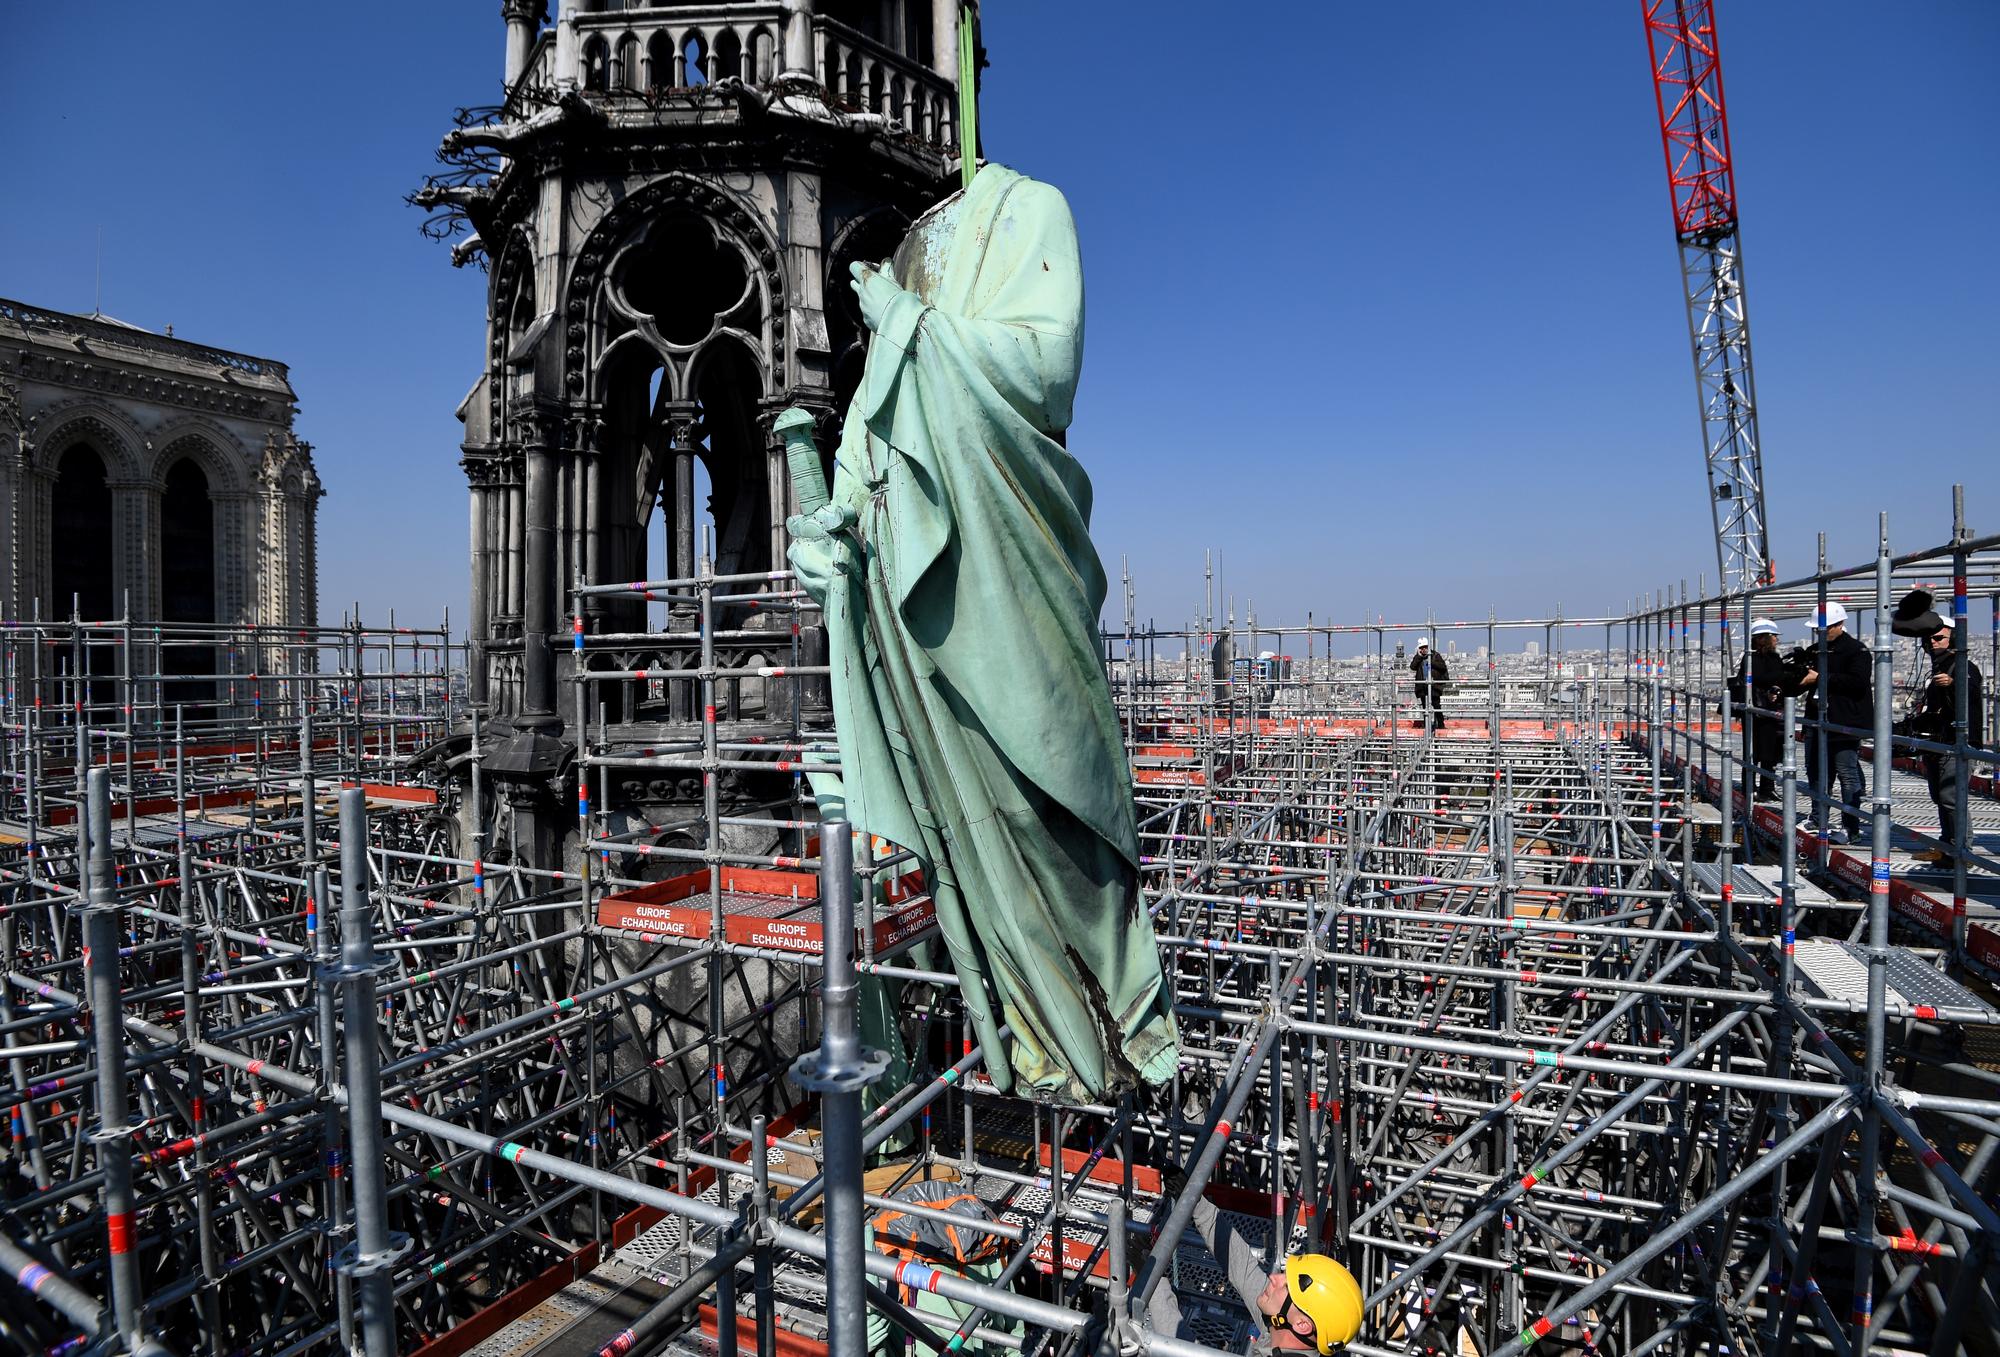 L'hélitreuillage des statues qui ornaient la flèche de Notre-Dame, emmenées en restauration jeudi dernier. [AFP - Bertrand Guay]